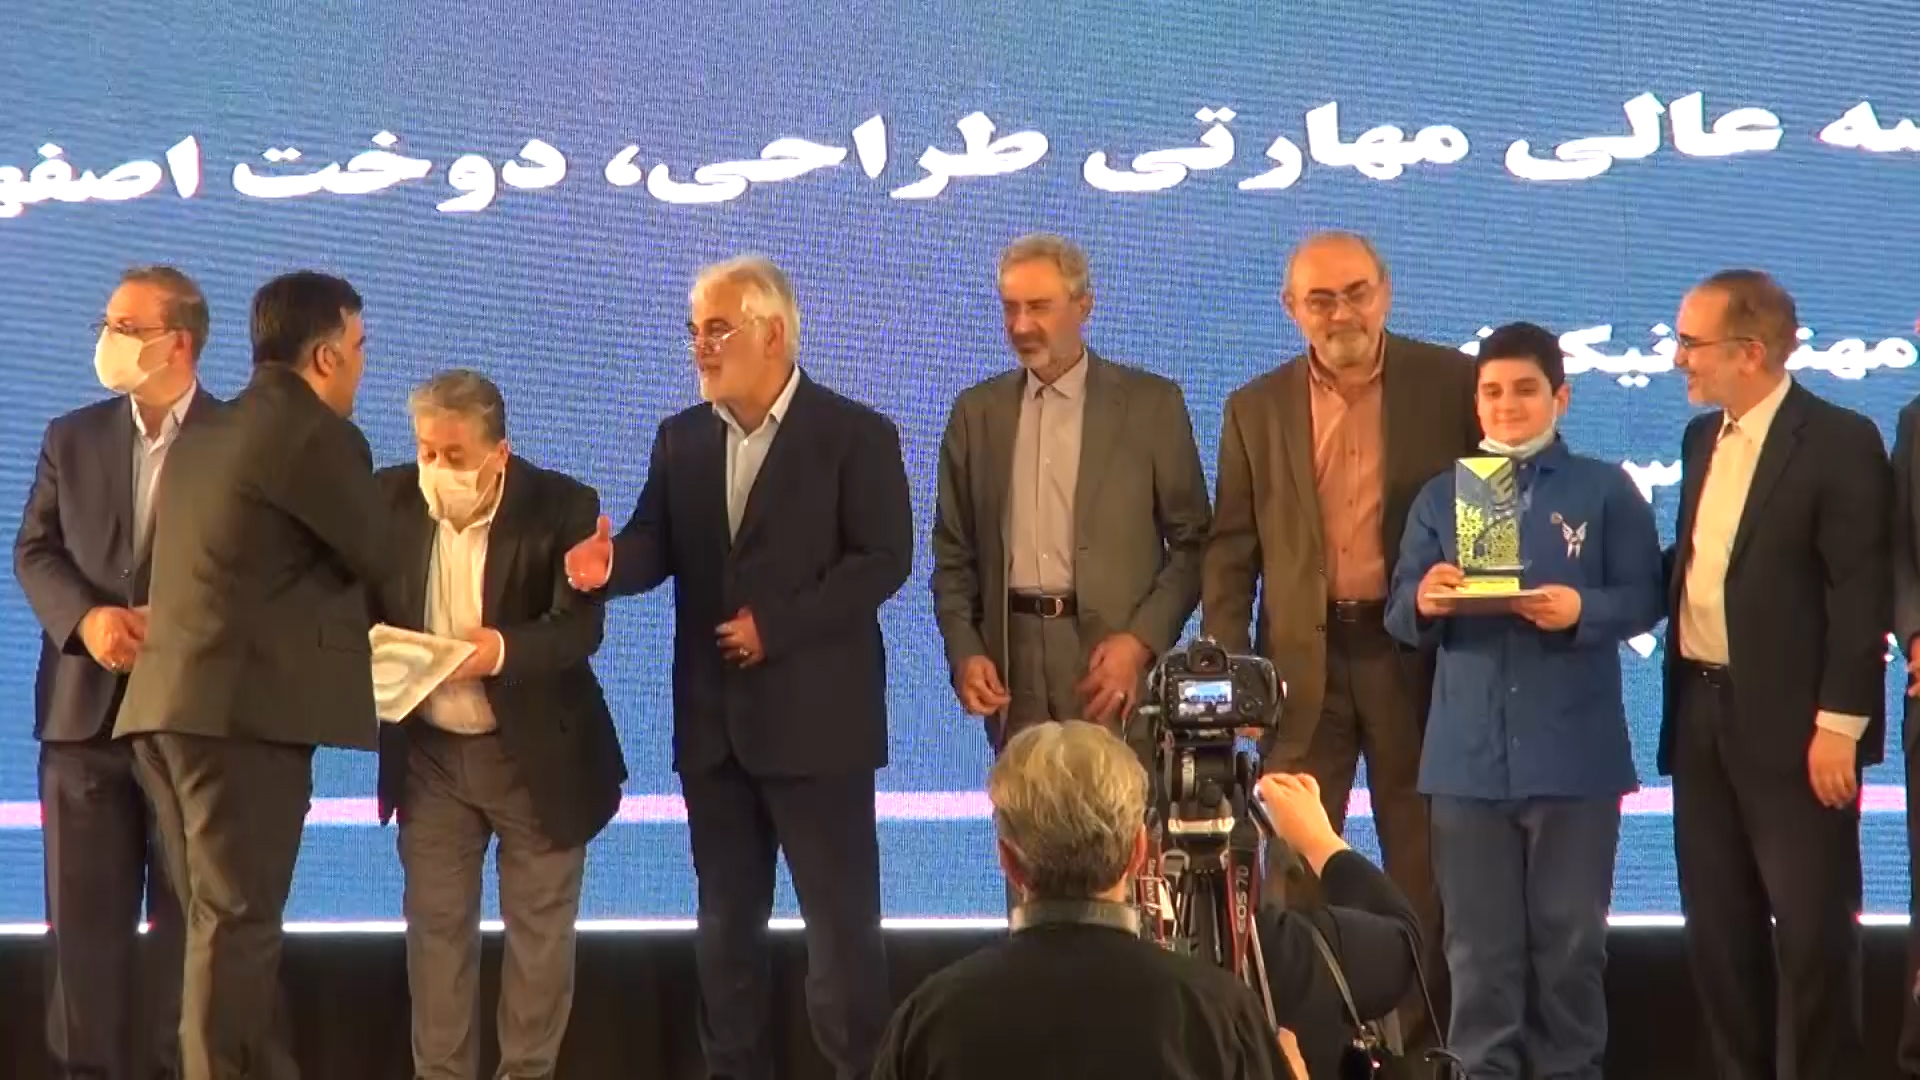 افتخار آفرینی دانشکده مهارت و کارآفرینی شهرکرد در جشنواره فرهیختگان+فیلم